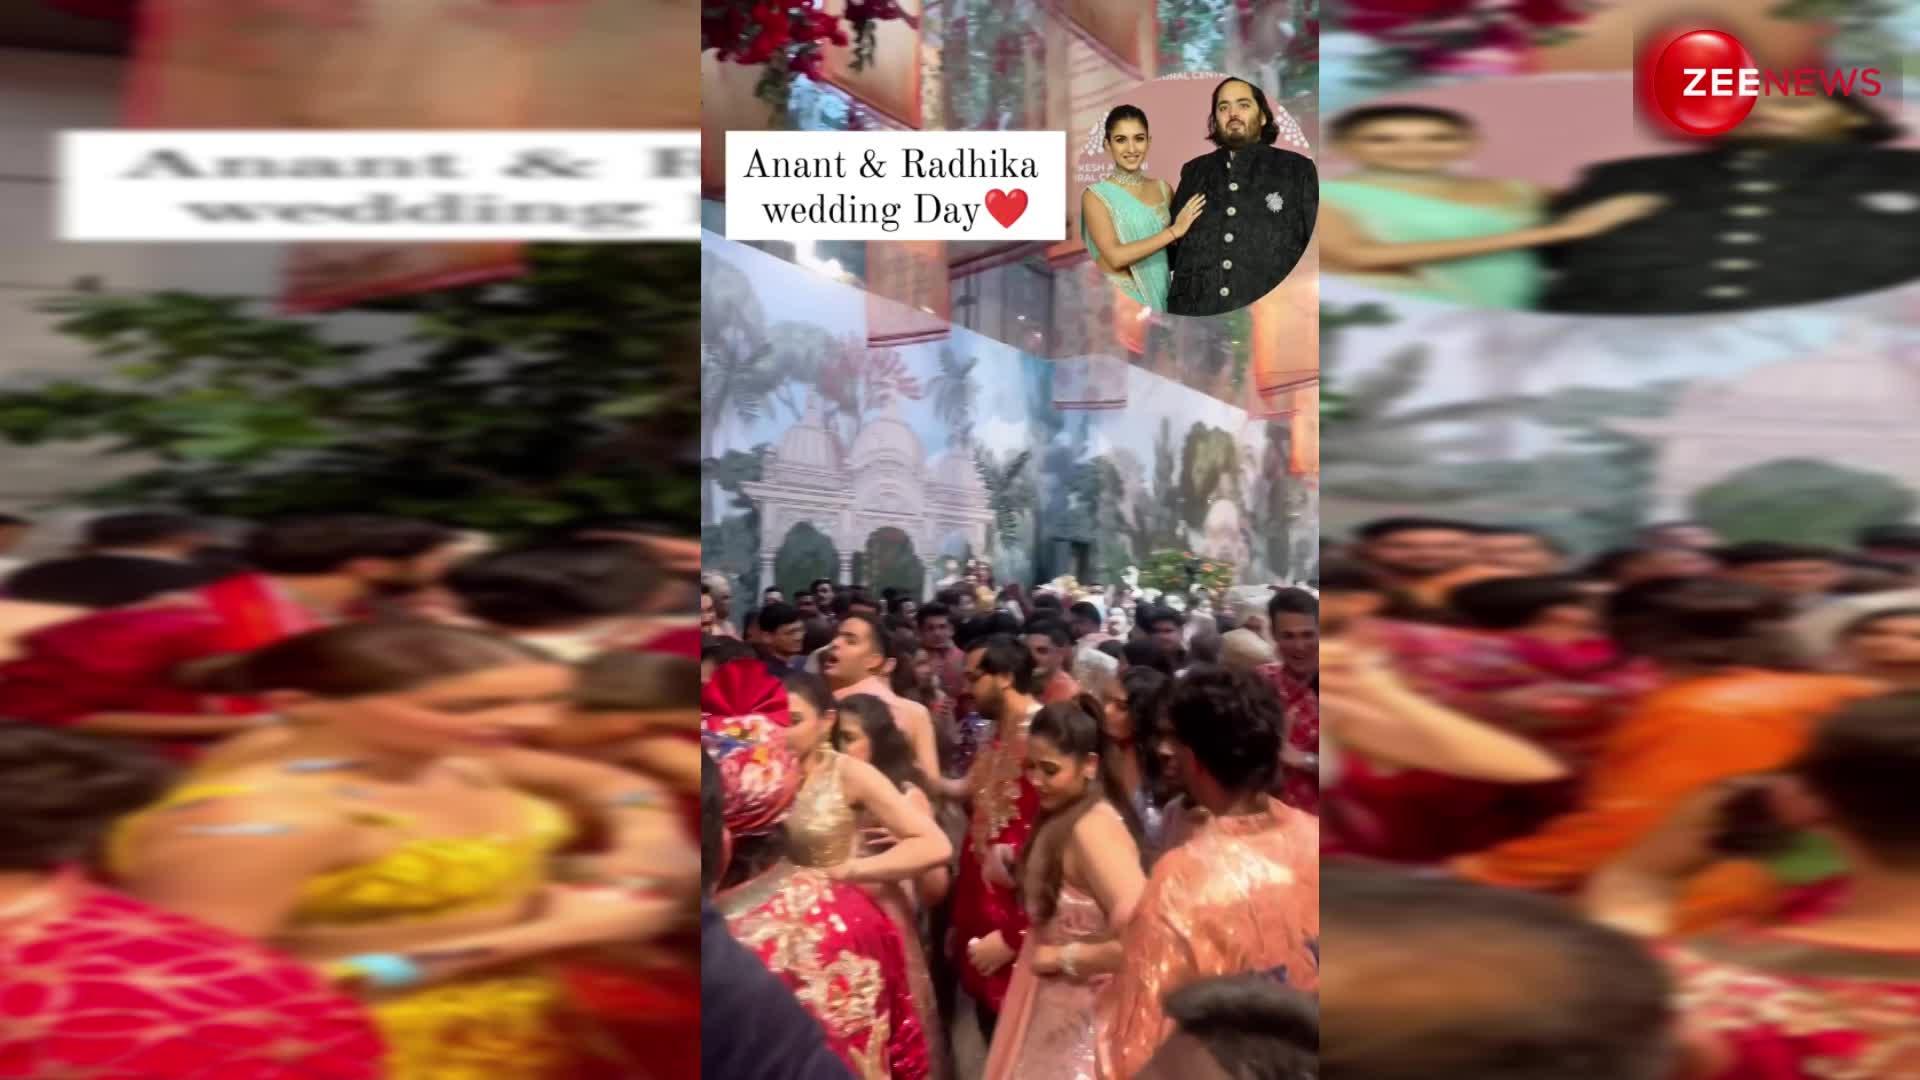 'ढोल जगीरो दा' गाने पर नाचा बॉलीवुड, अनंत-राधिका की शादी का माहौल हुआ रोमांचक